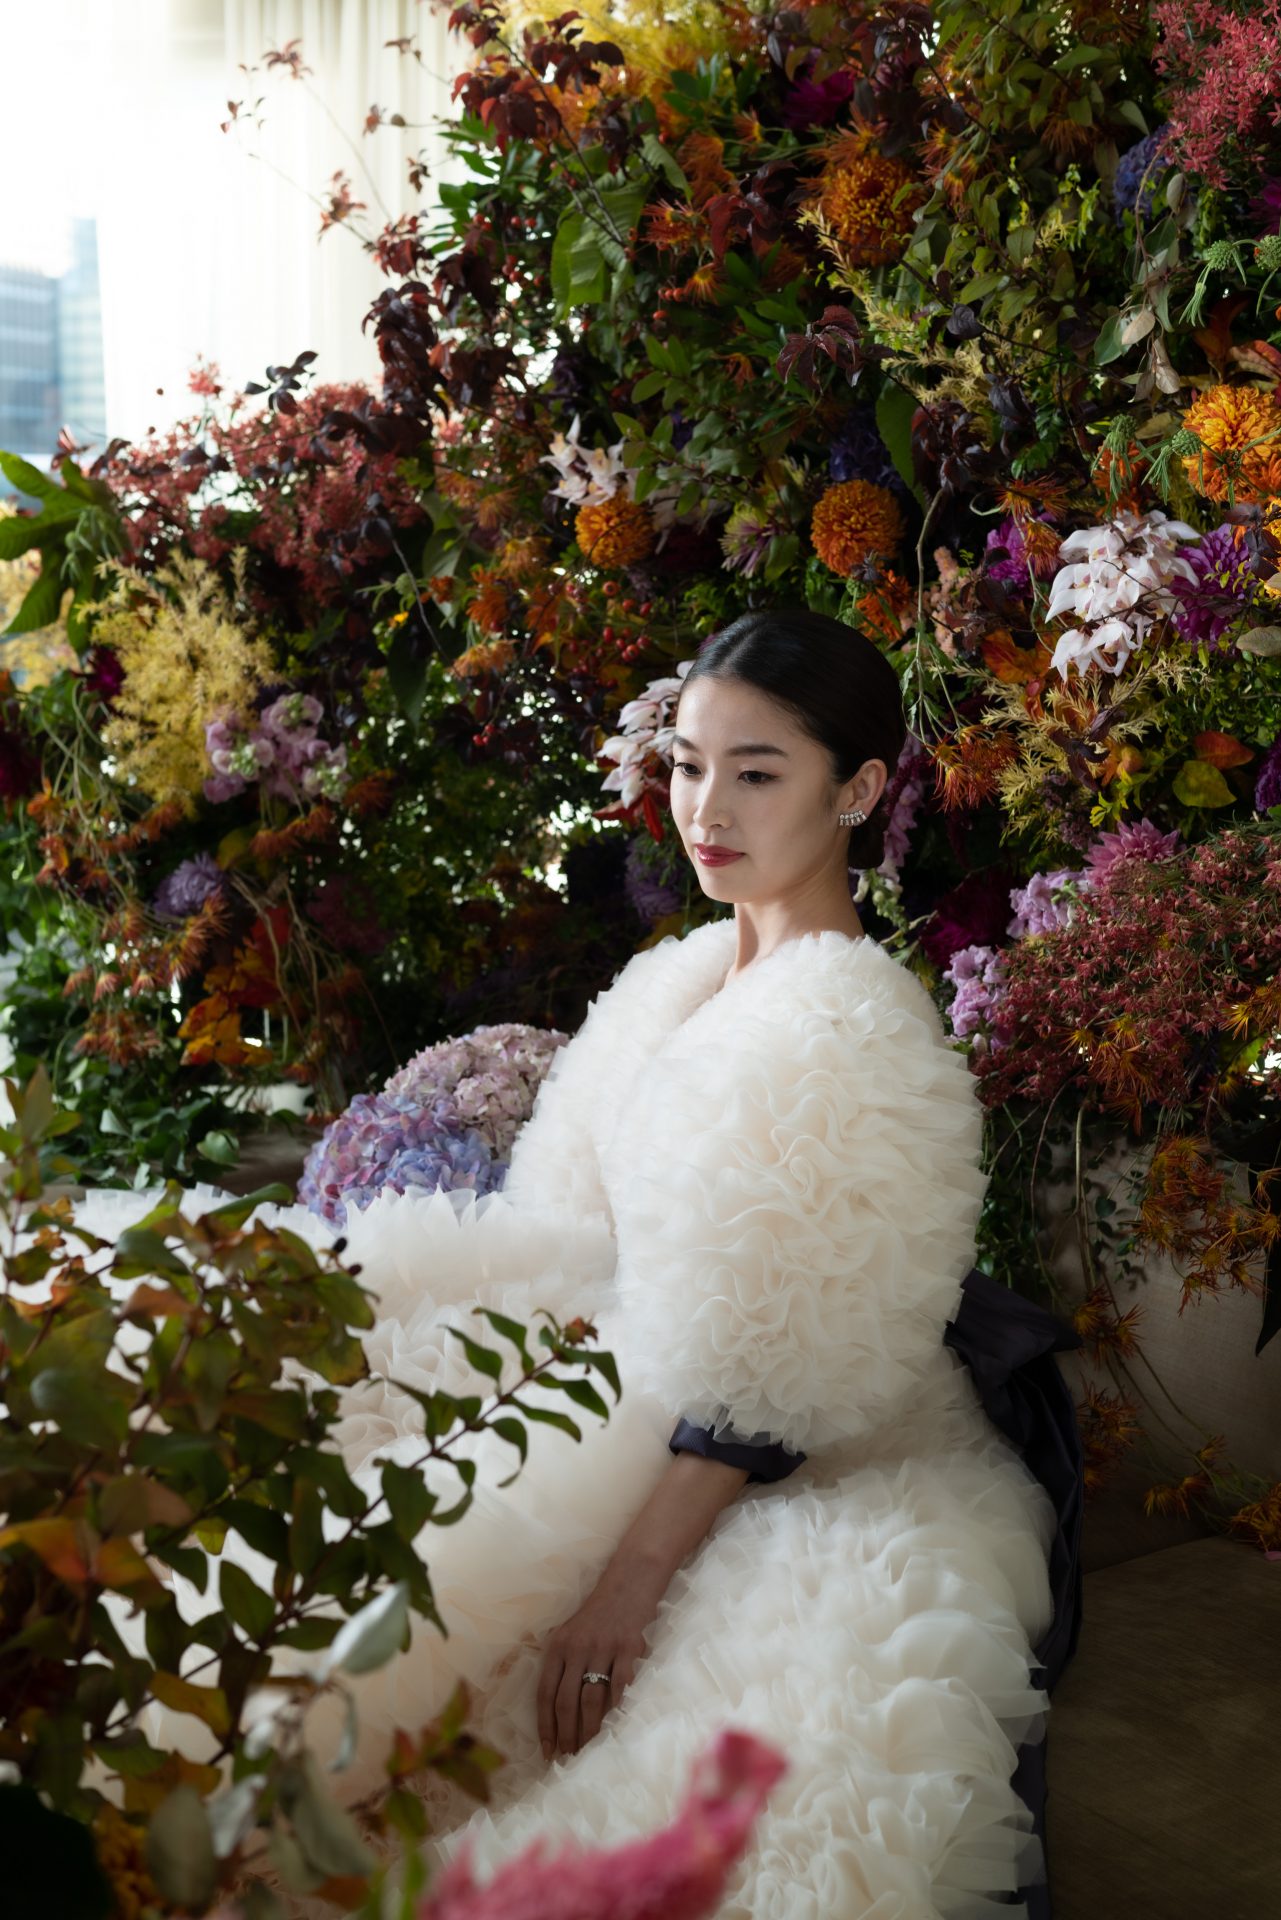 黒沢祐子さんプロデュースのトモコイズミフォートリートメゾンのウェディングドレスを身に纏った花嫁様の前撮りレポートのご紹介。